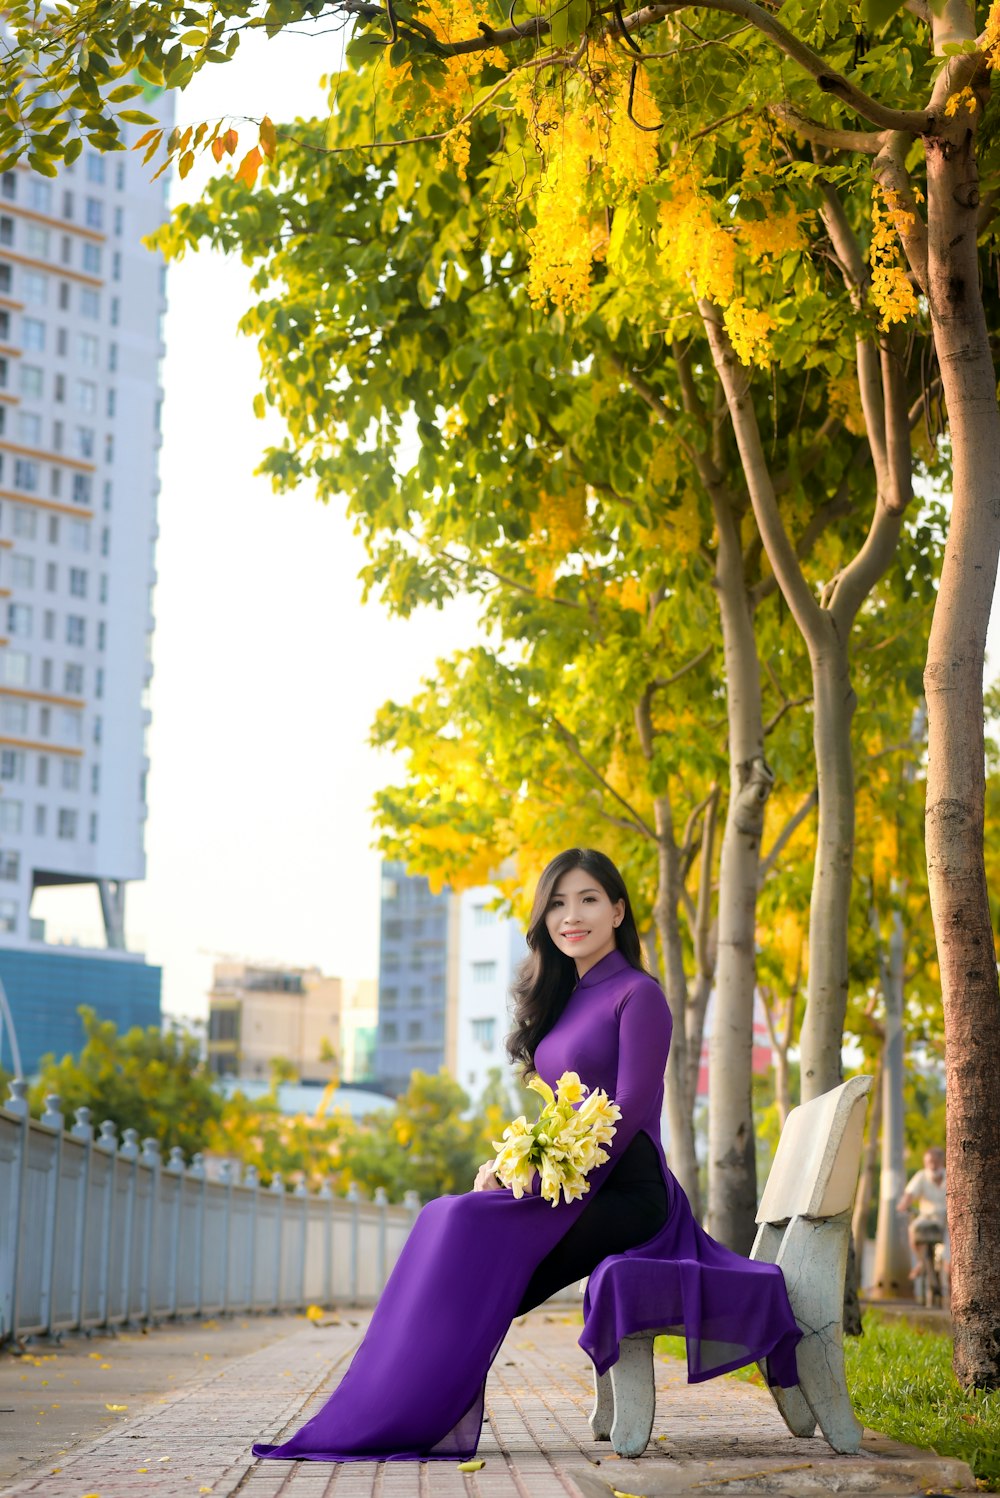 Mujer en vestido púrpura de pie debajo del árbol durante el día